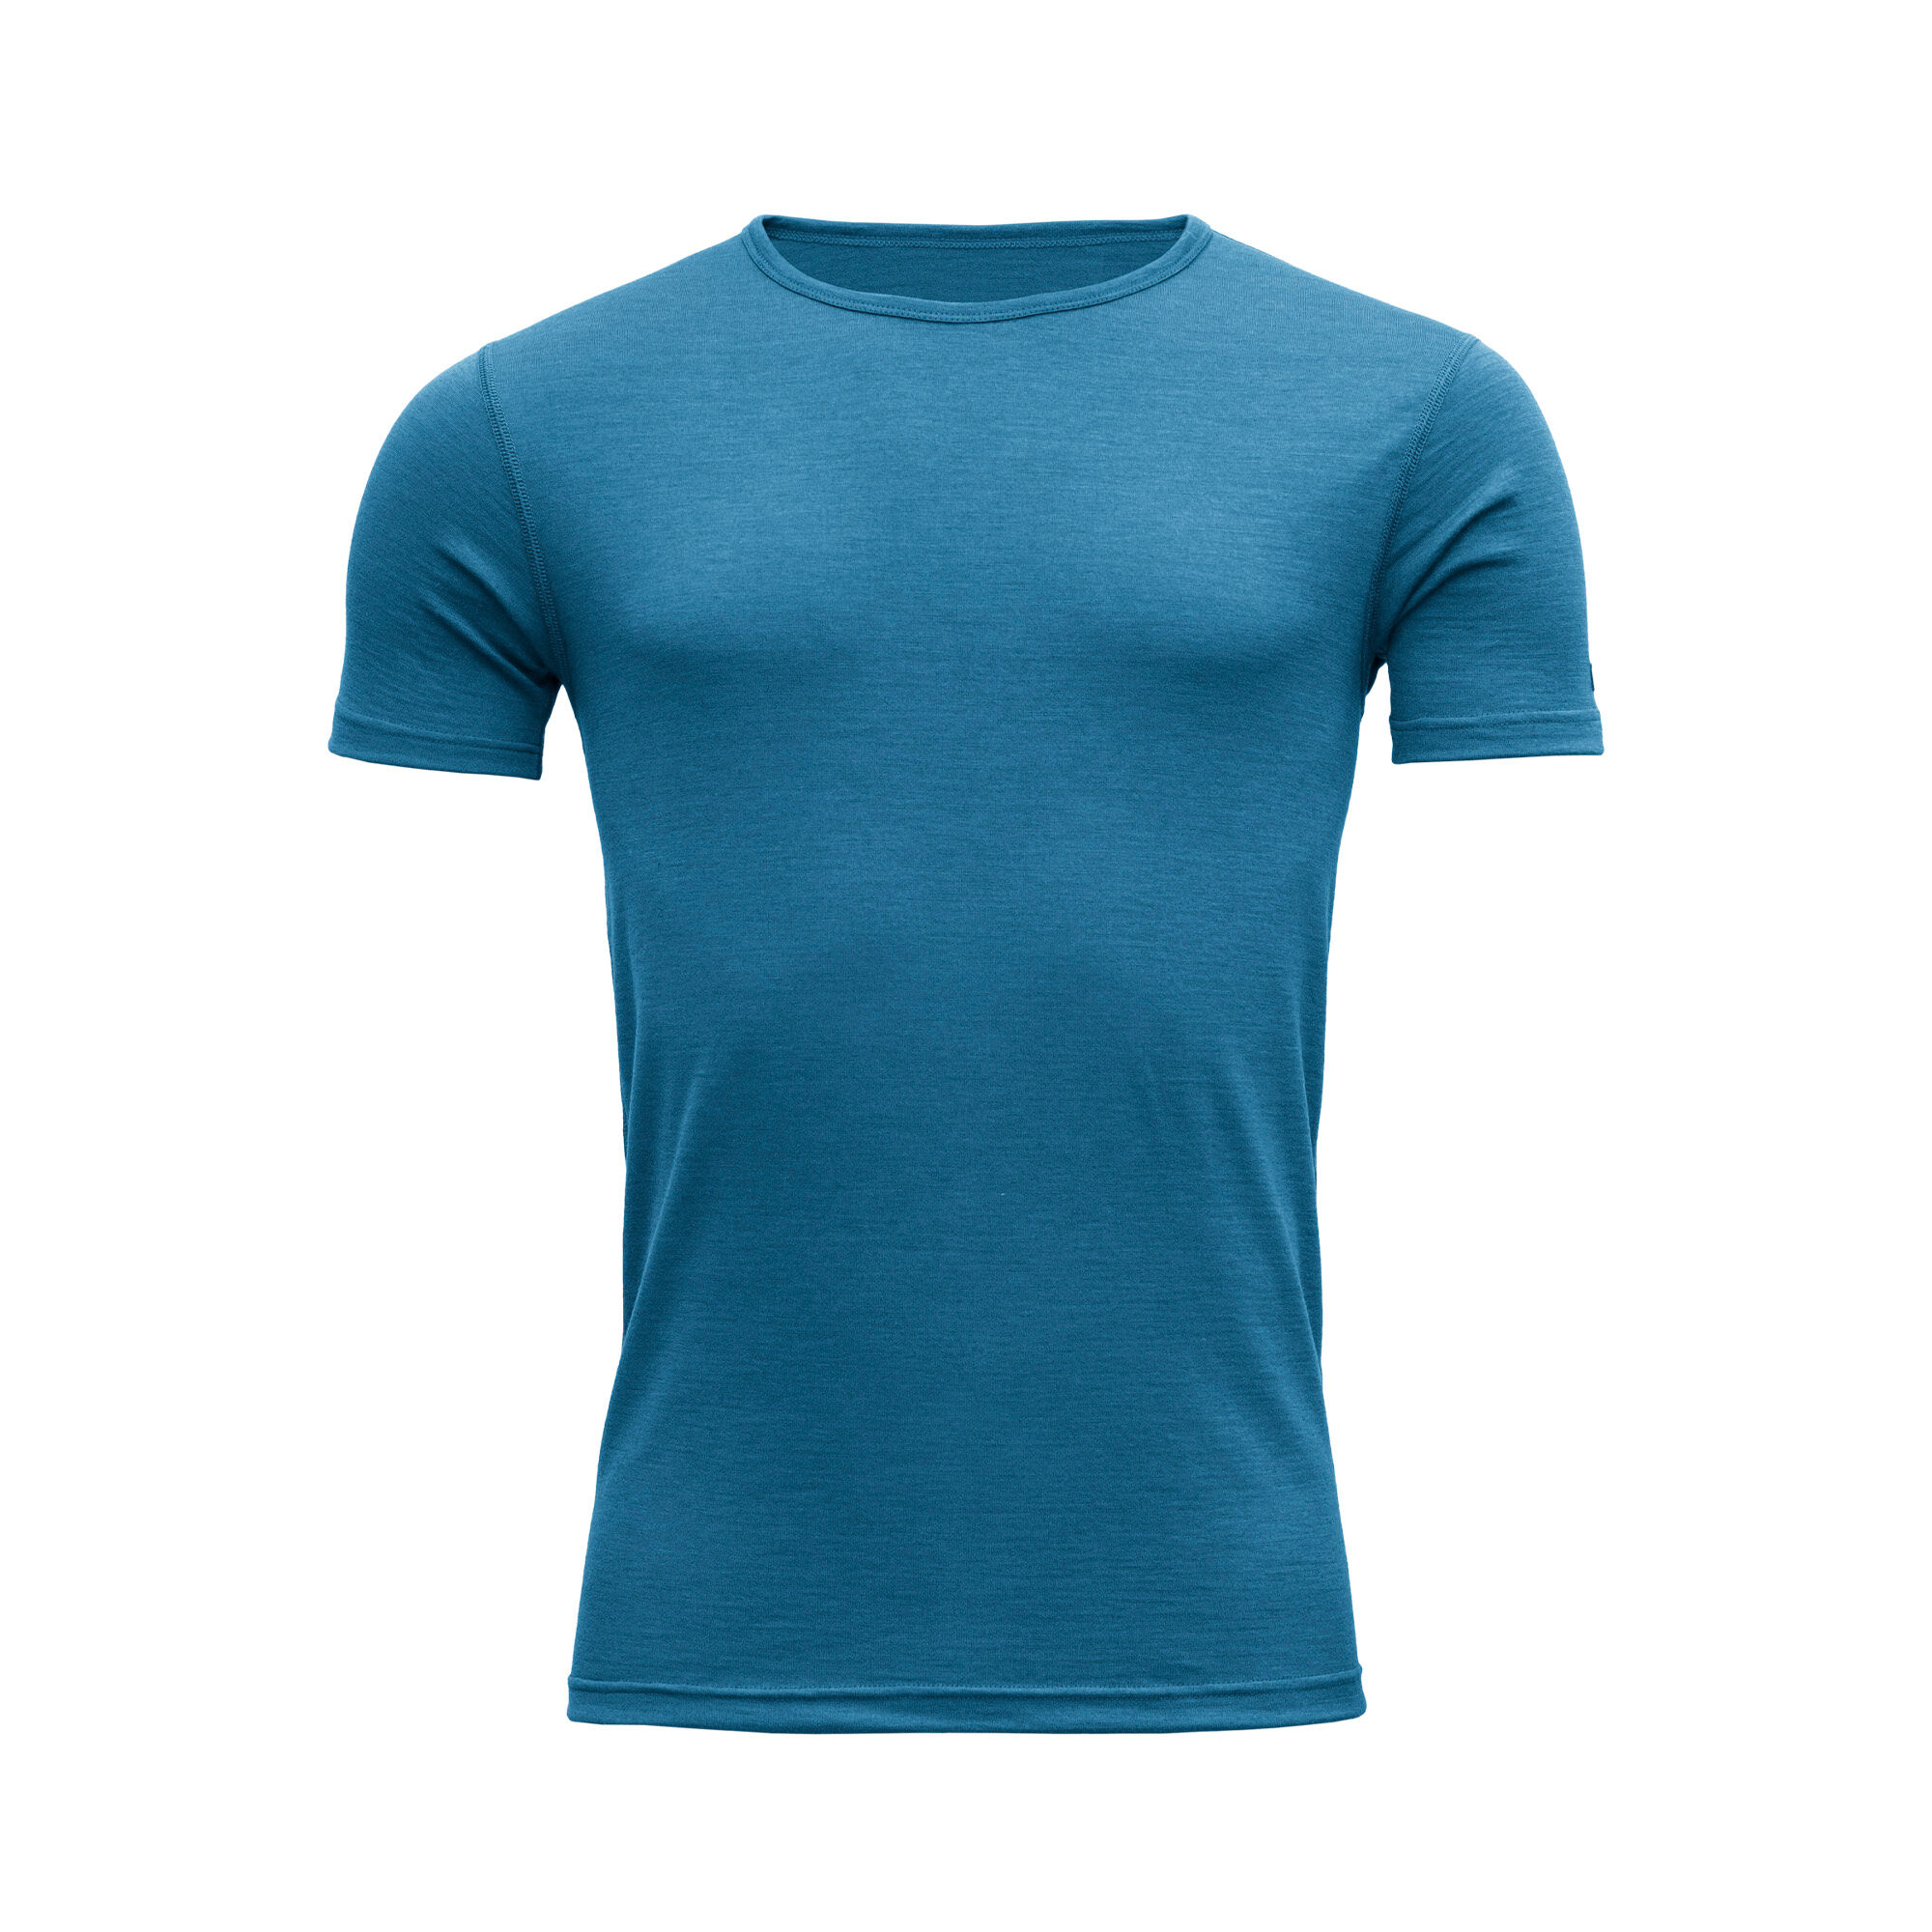 Devold Breeze  - T-shirt - Men's